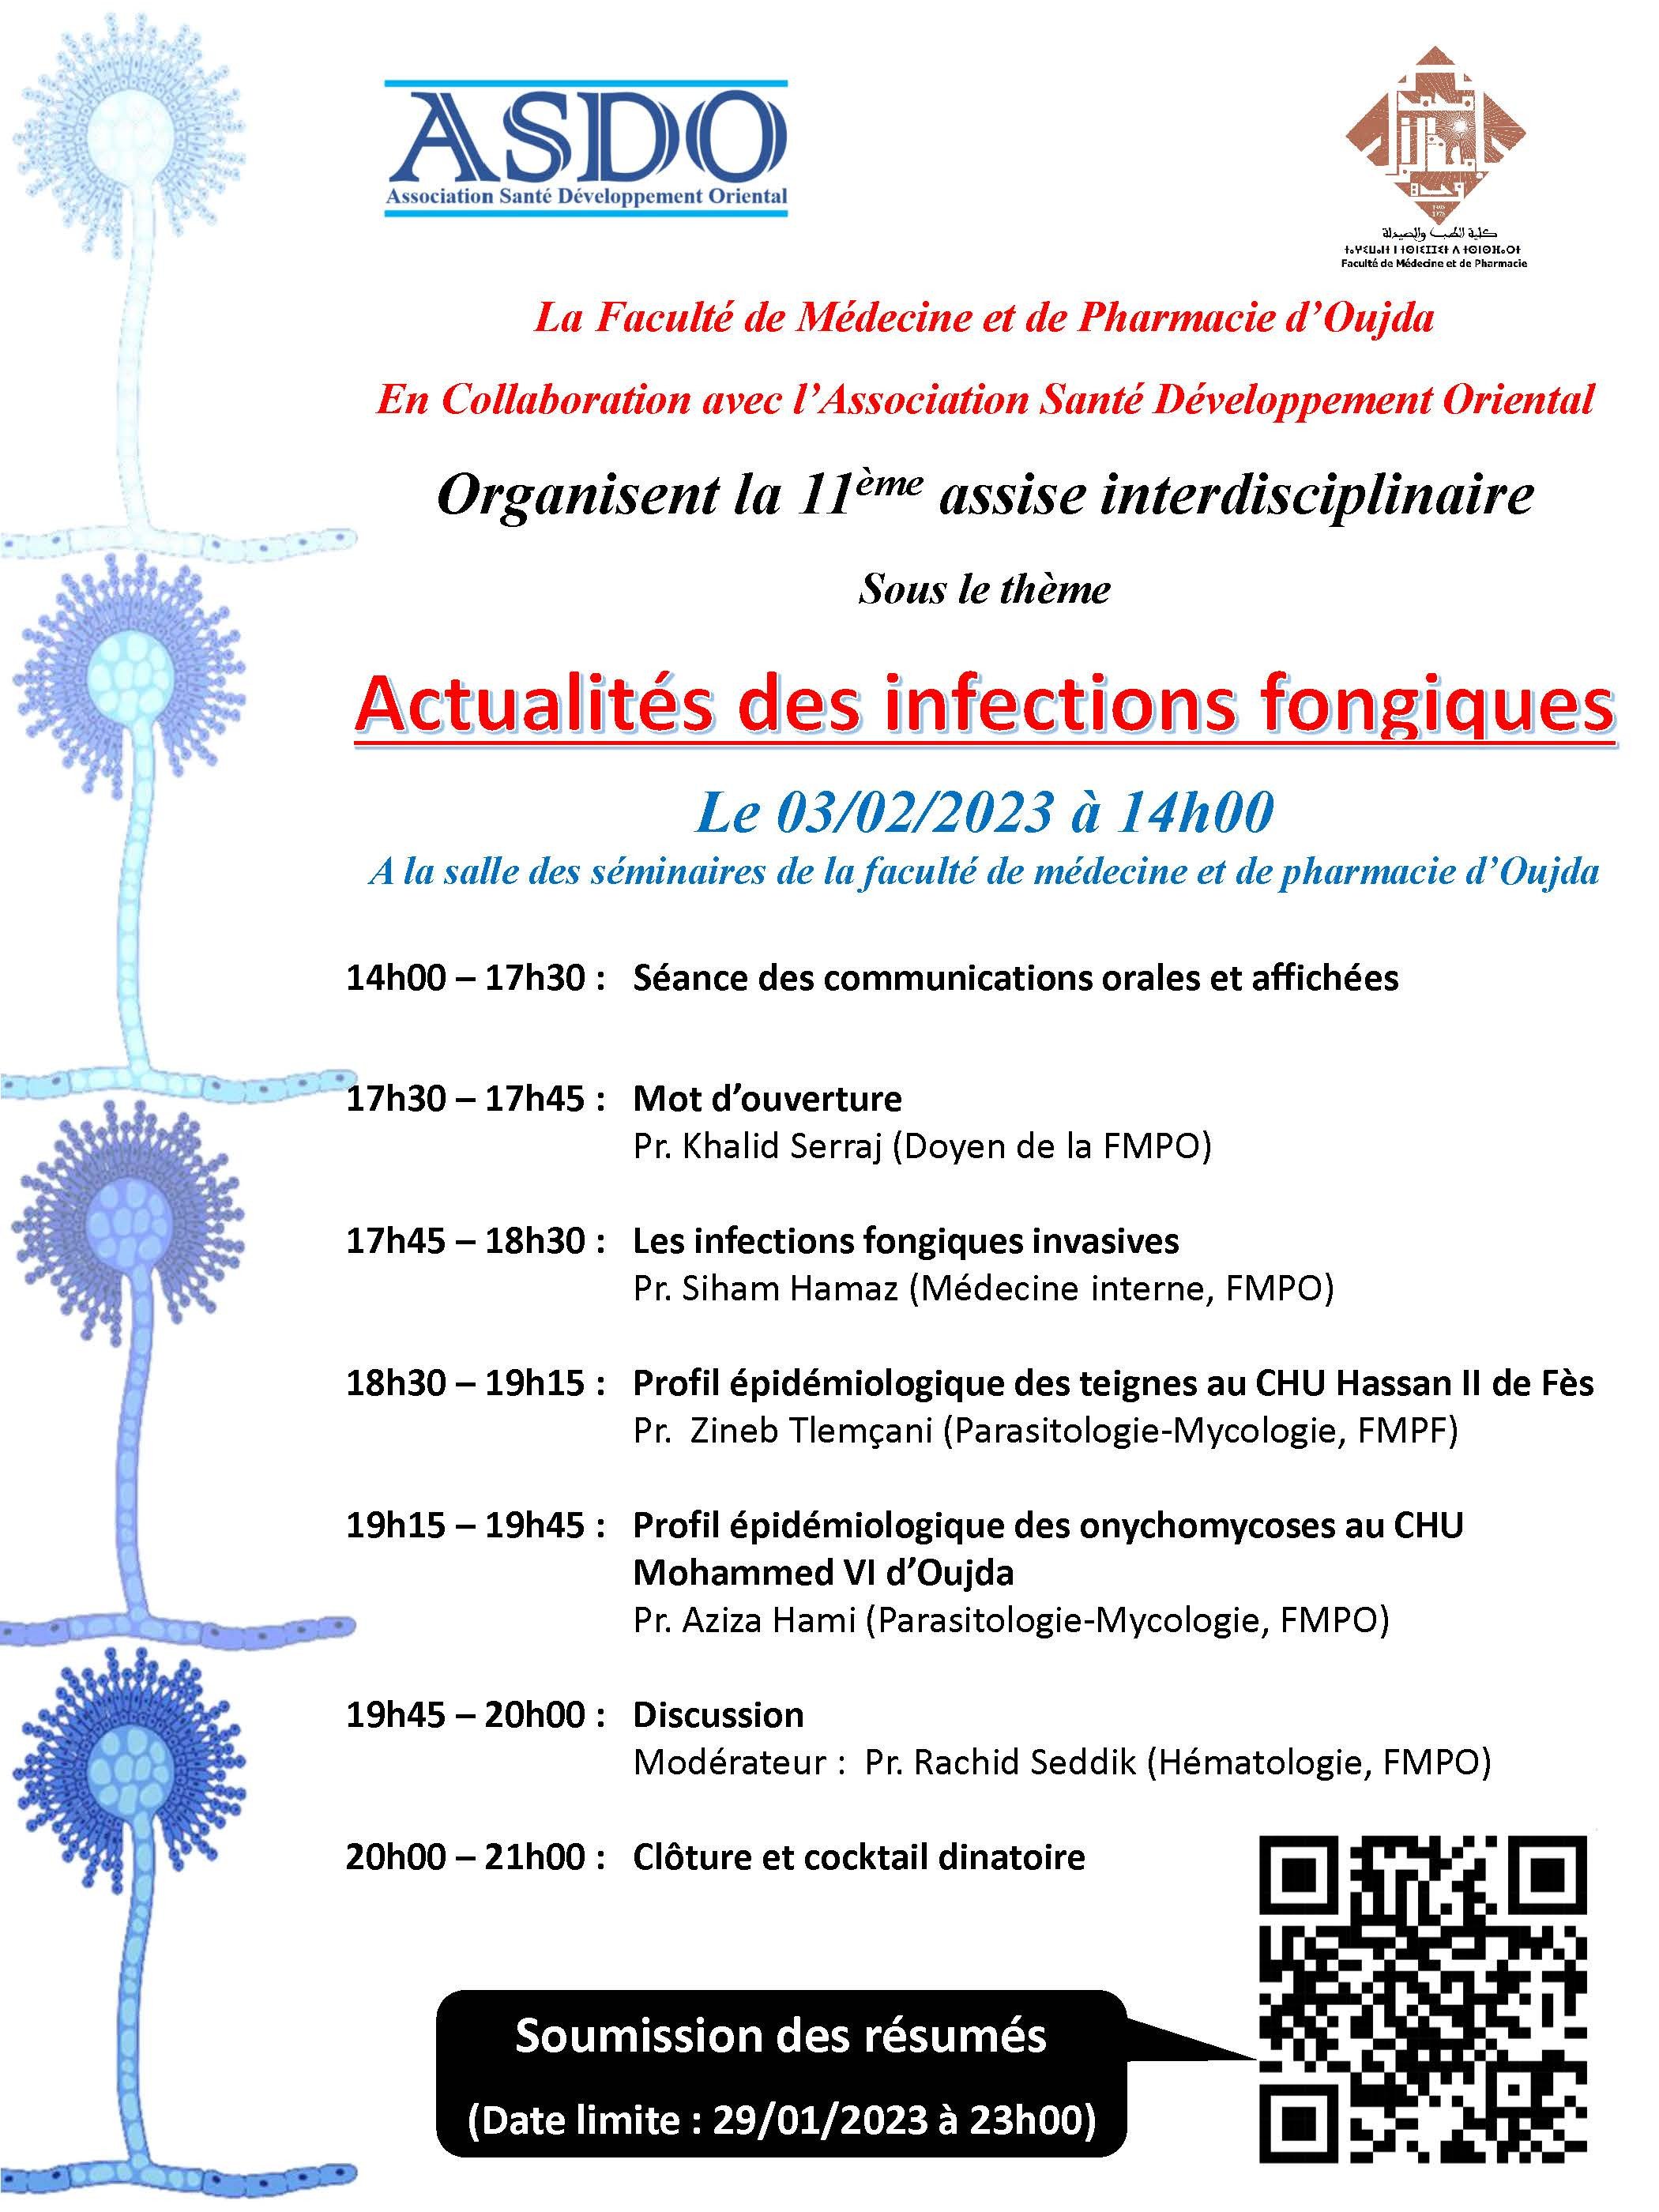 11 ème assise interdisciplinaire: Actualités des infections fongiques